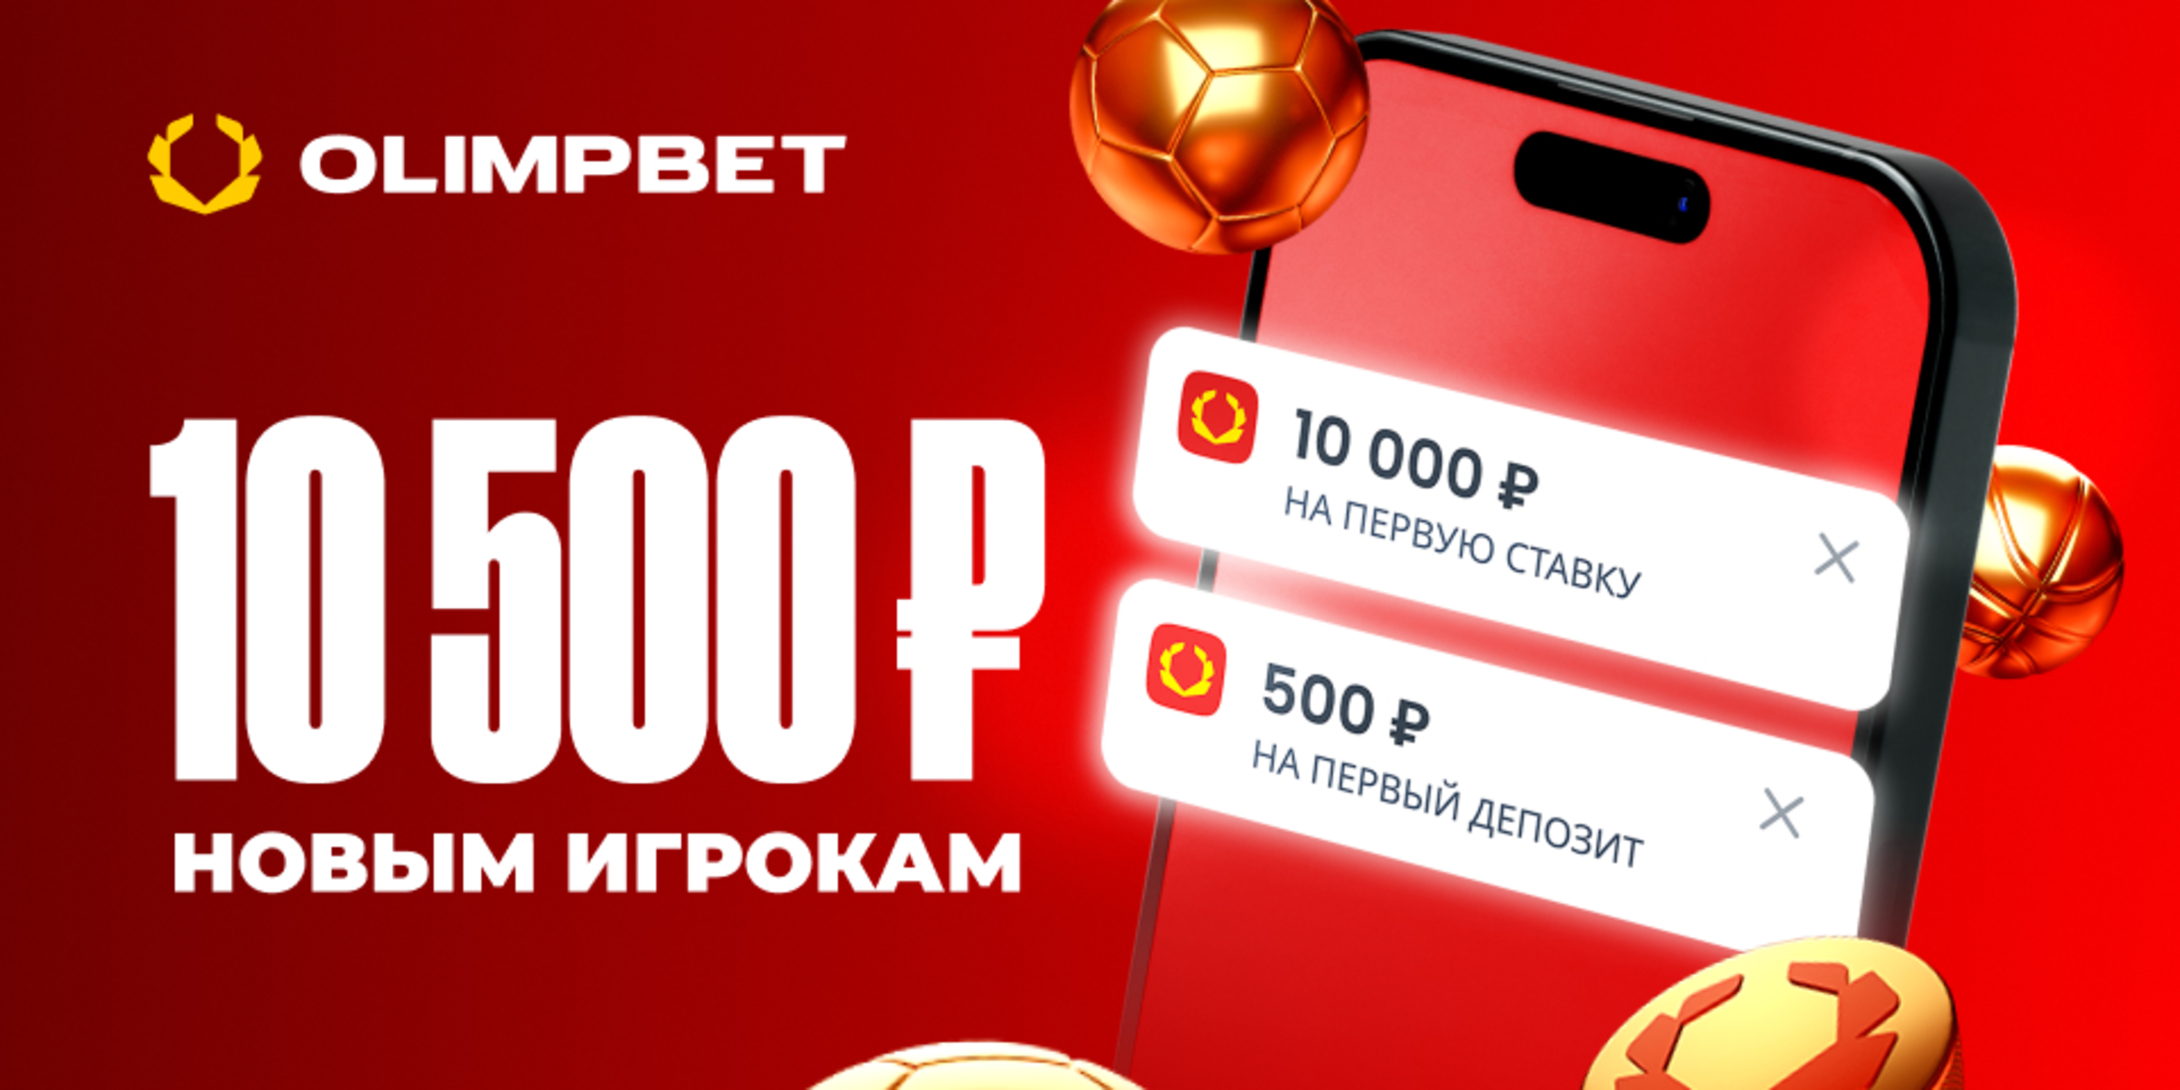 Промокод в OLIMPBET: фрибет +500 рублей за регистрацию